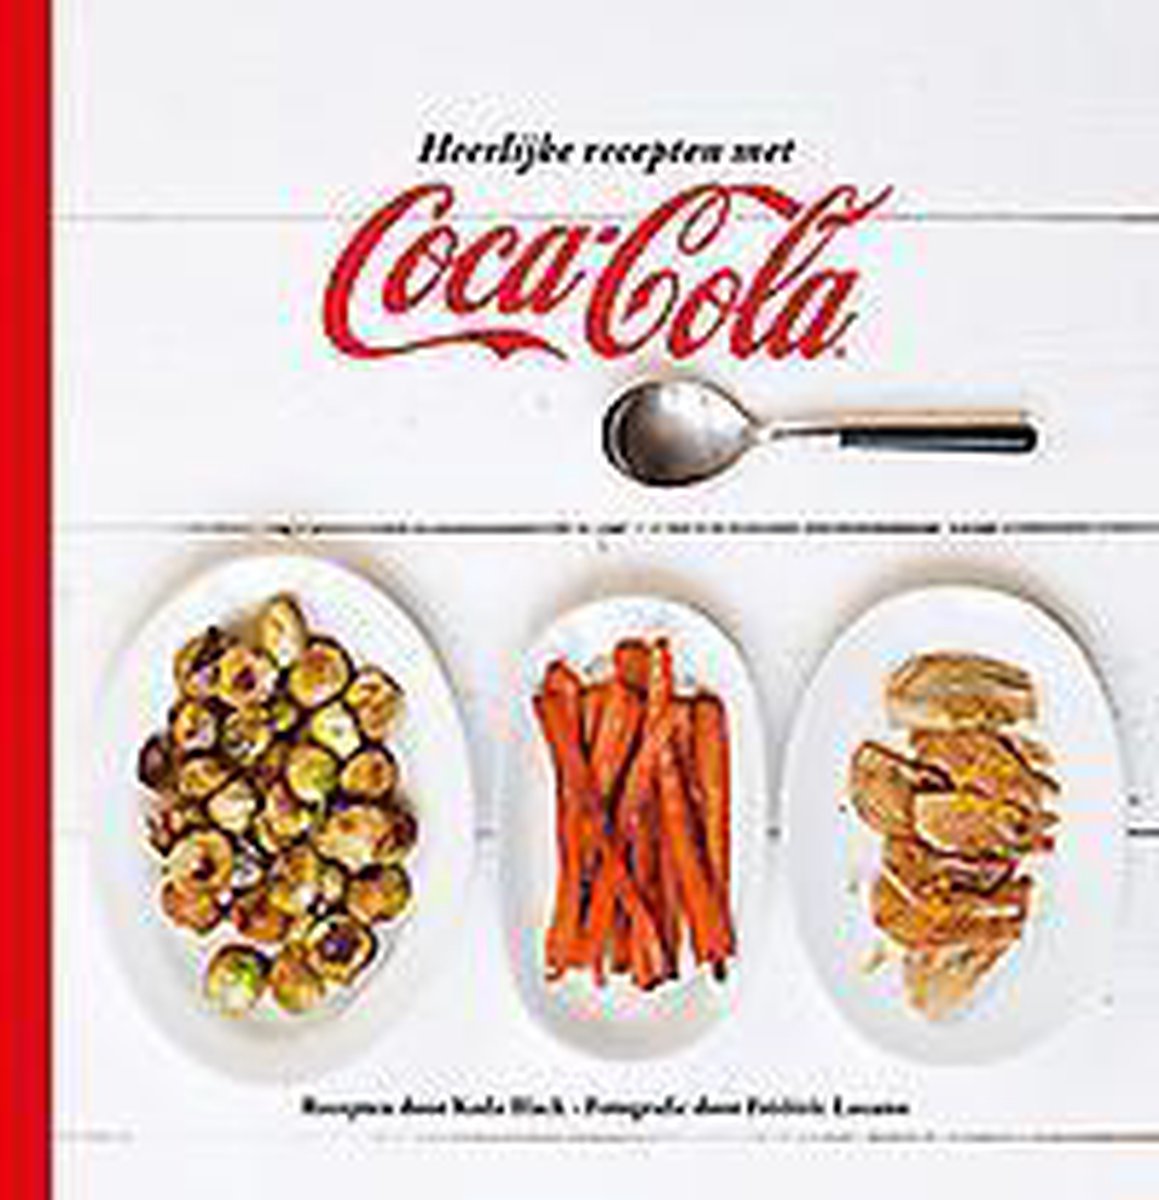 Heerlijke recepten met Coca-Cola